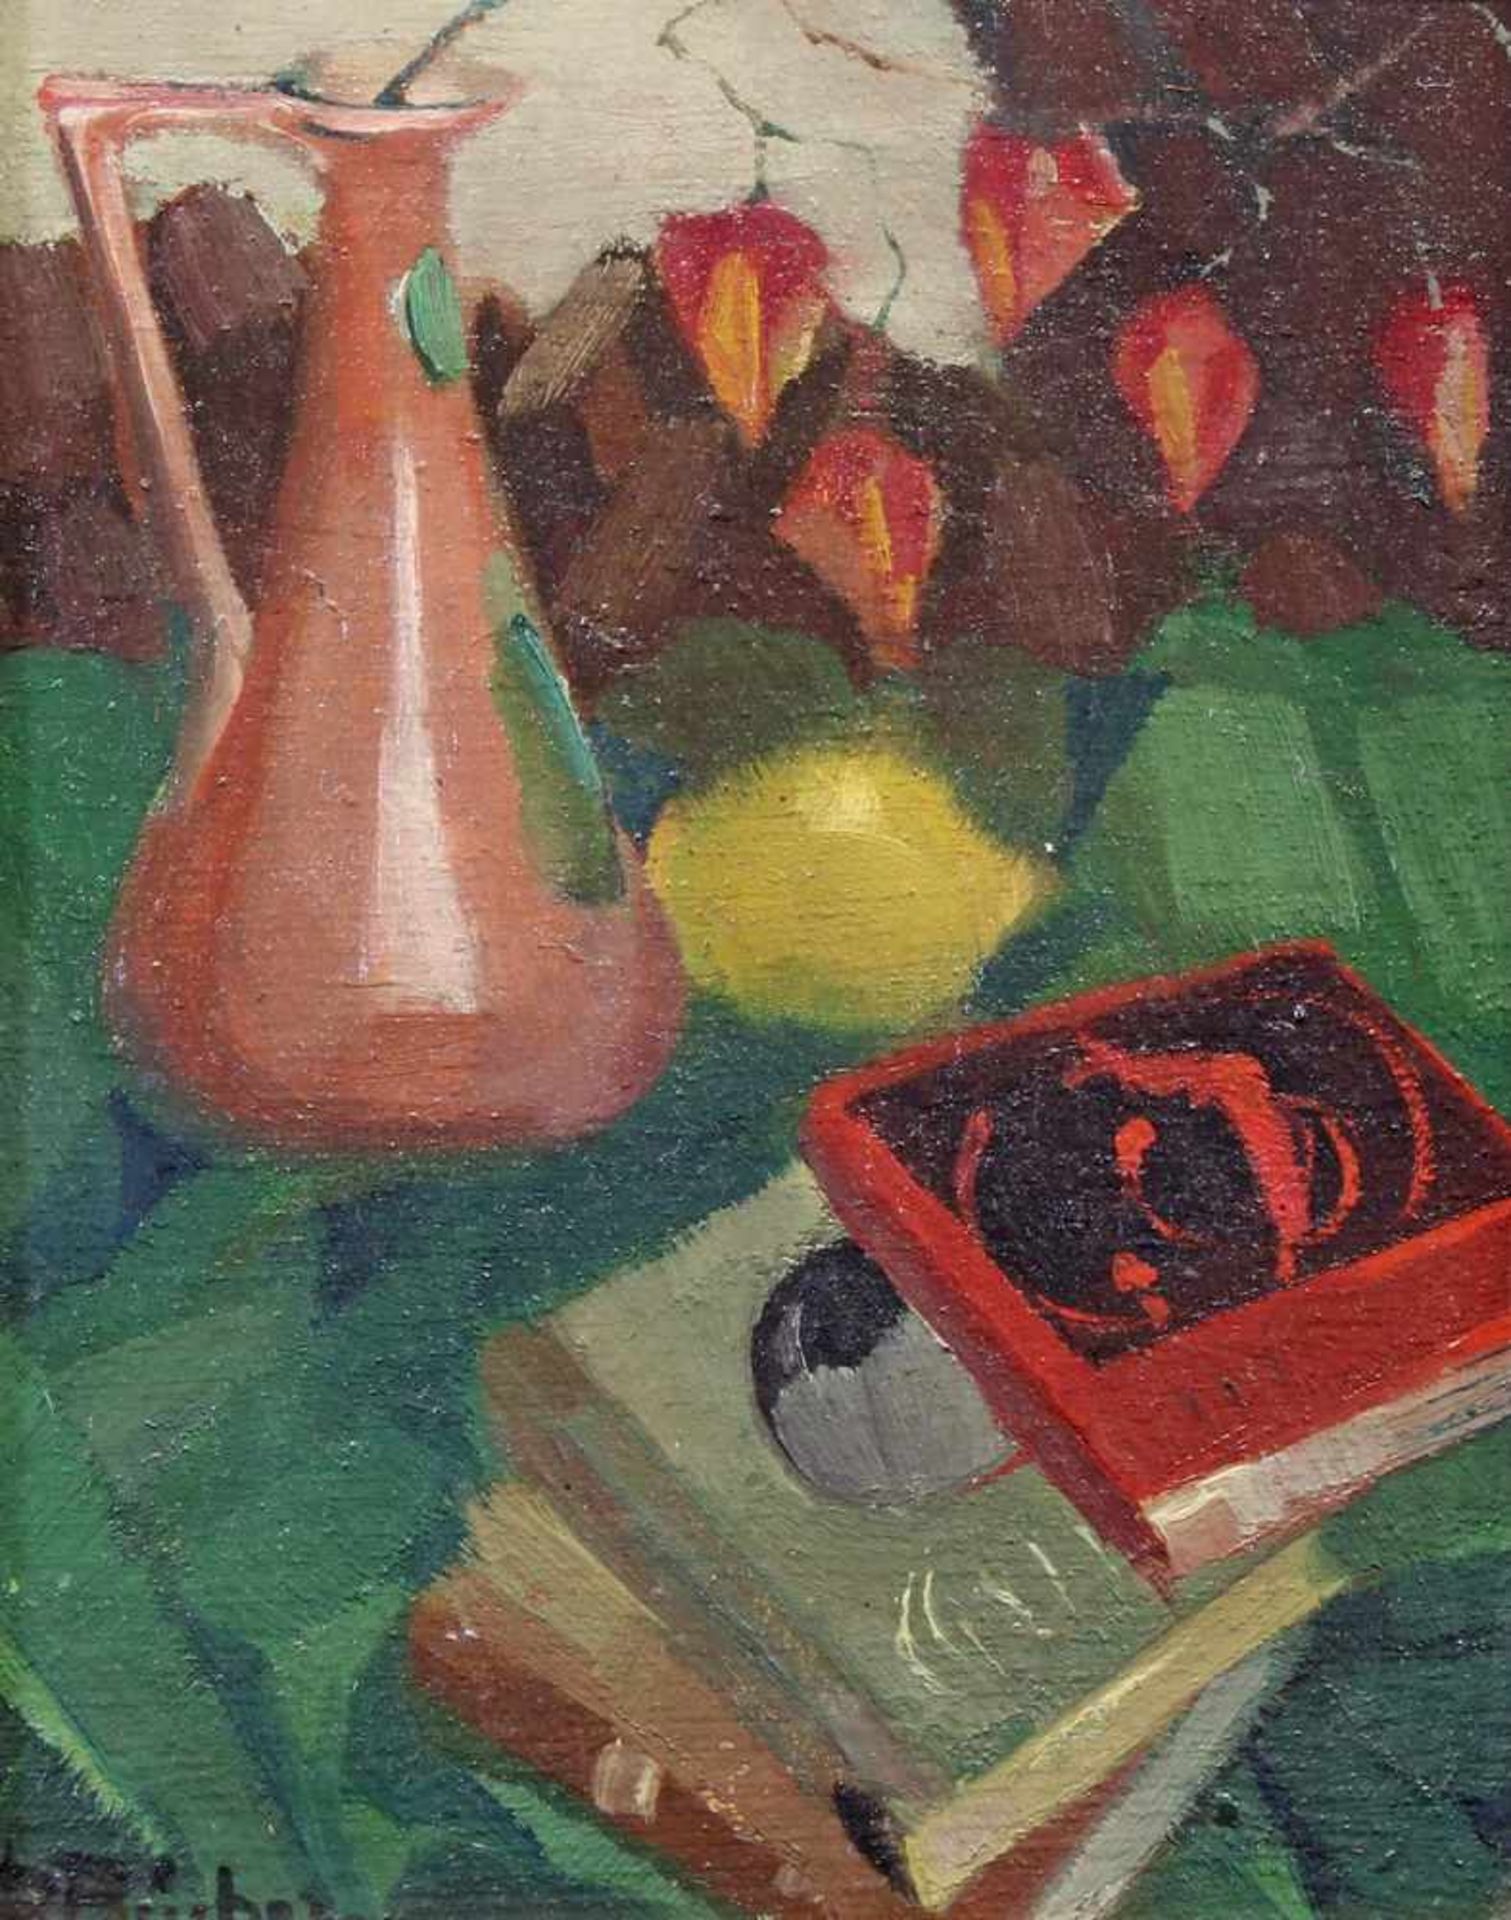 Bücher, Paul (1891 - 1968 Düsseldorf, Landschaftsmaler), "Stillleben mit Büchern und Kupferkanne", - Bild 2 aus 6